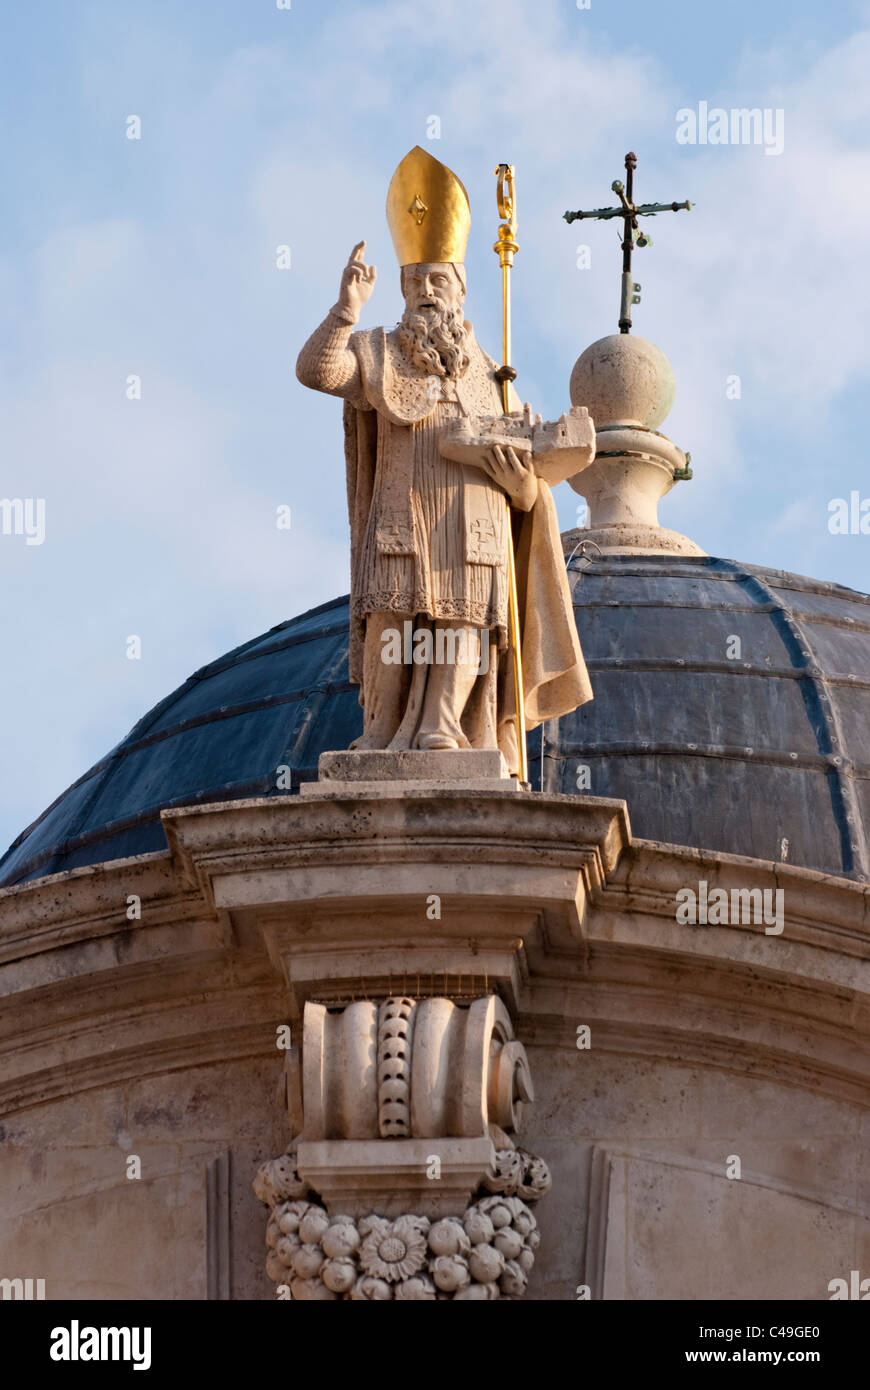 La statue de Saint Blaise sur le toit de l'église de St Blaise est situé dans Old Town, Dubrovnik, Croatie. Banque D'Images